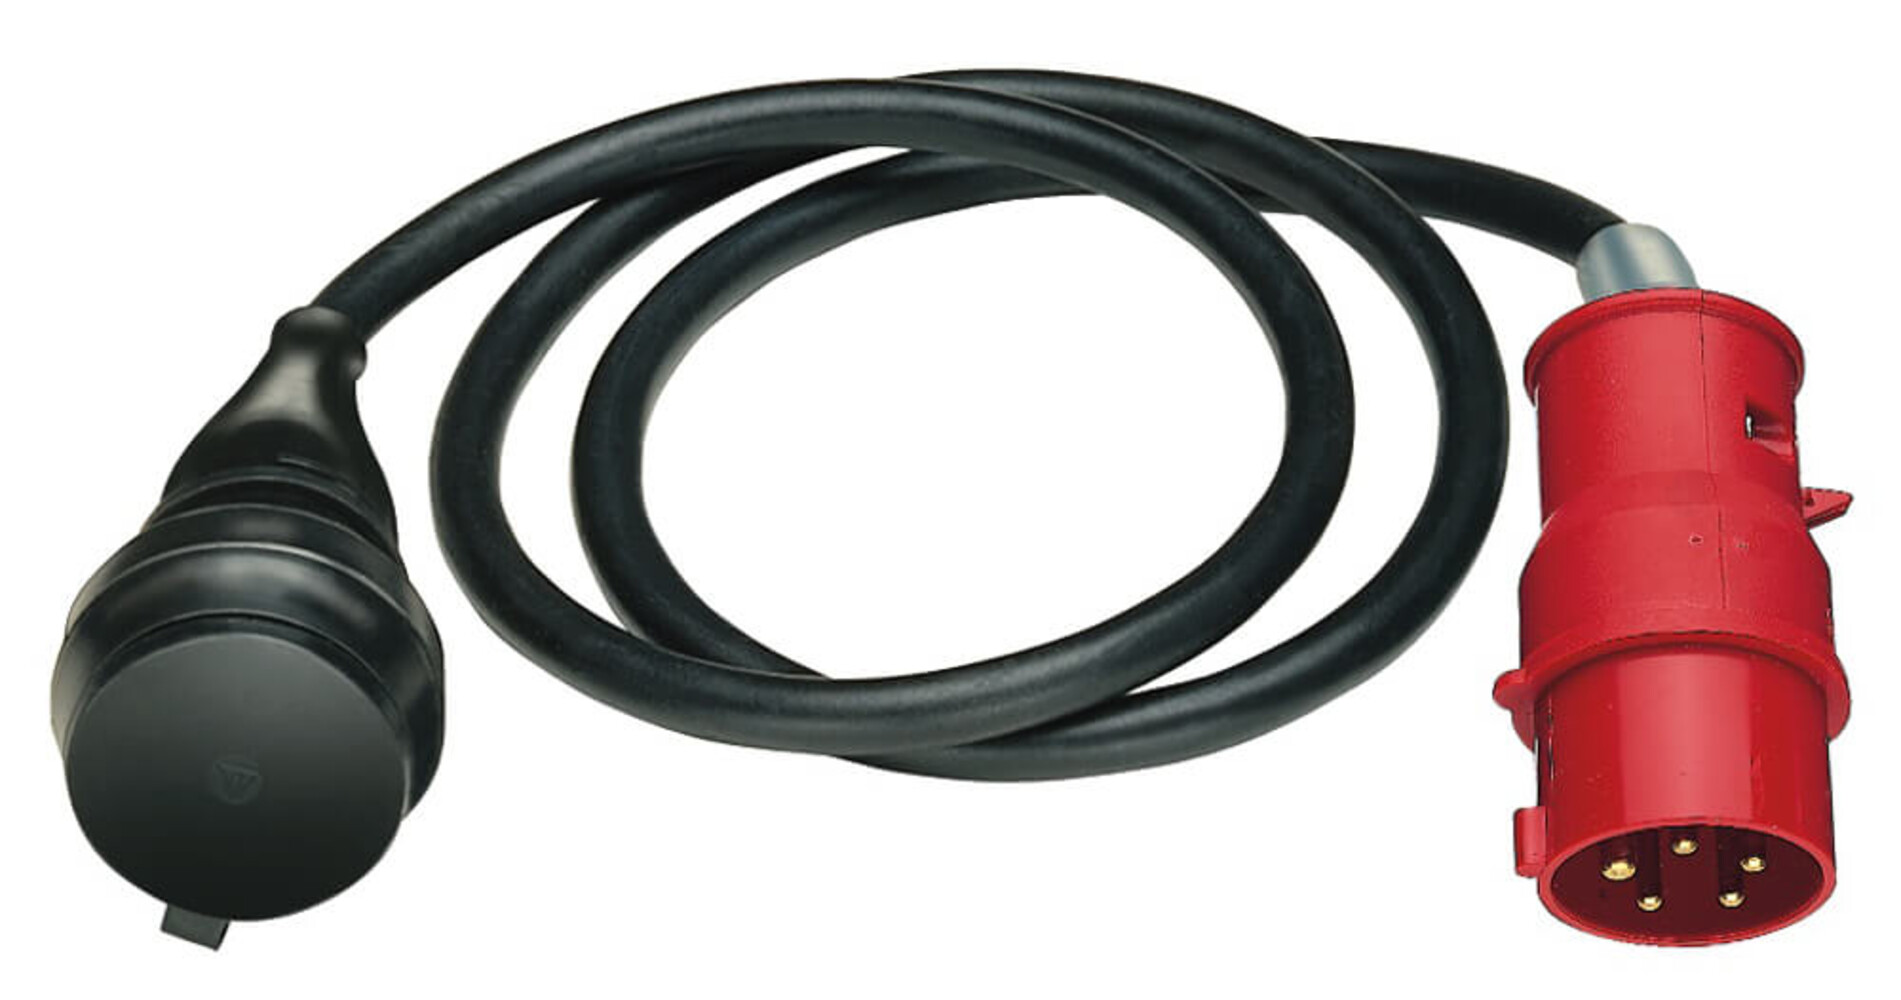 Hochwertiges schwarzfarbenes Verbindungs- & Adapterkabel von Brennenstuhl